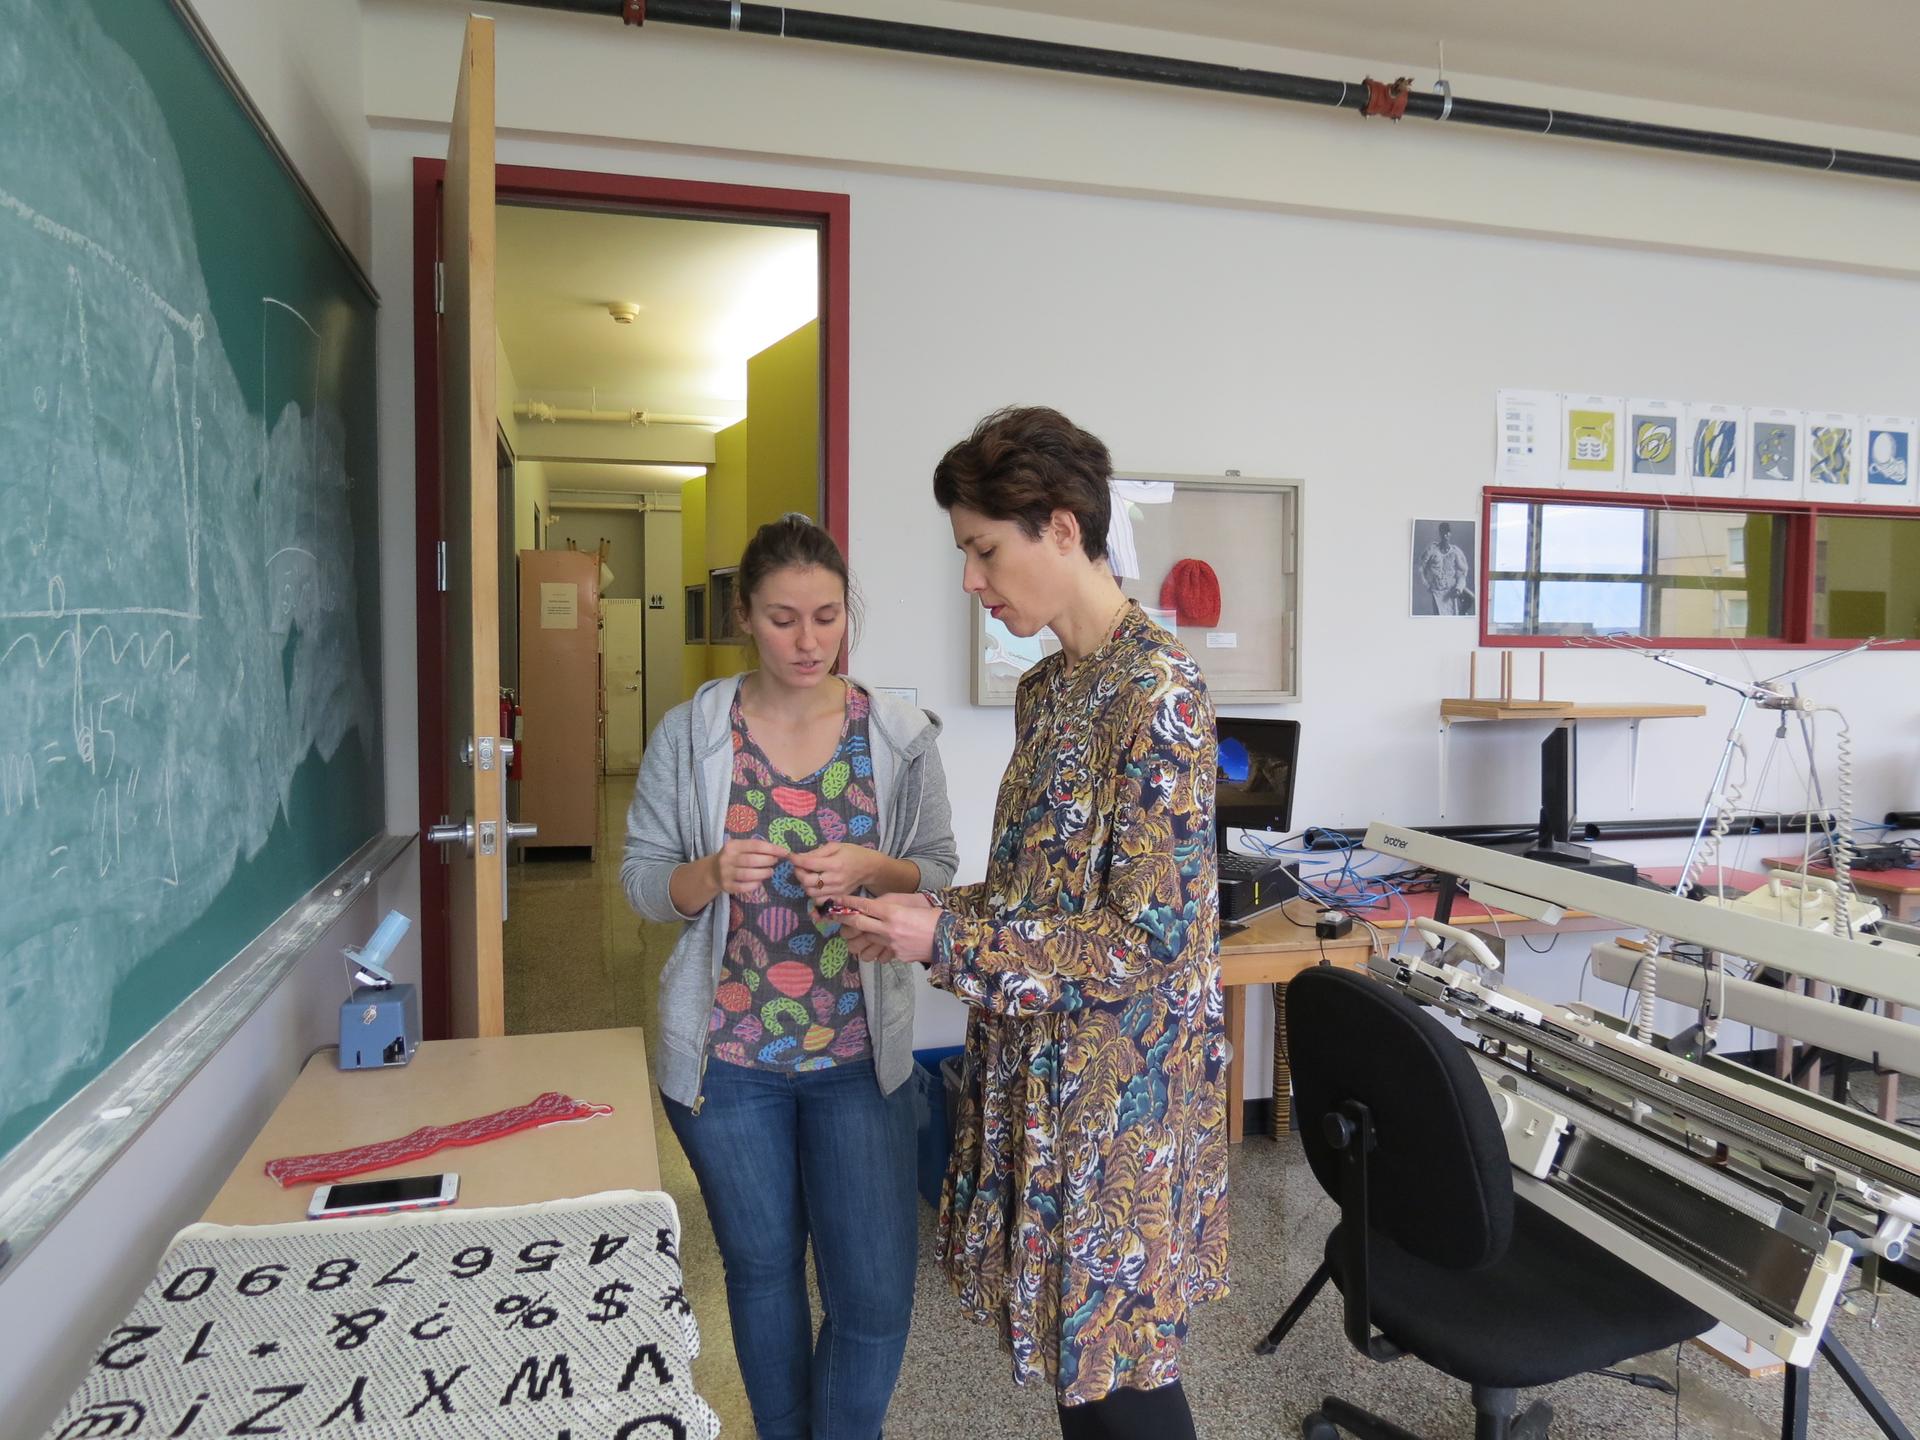 Atelier On Drawing mené par Ana Mendes à la Maison des métiers d'art de Québec